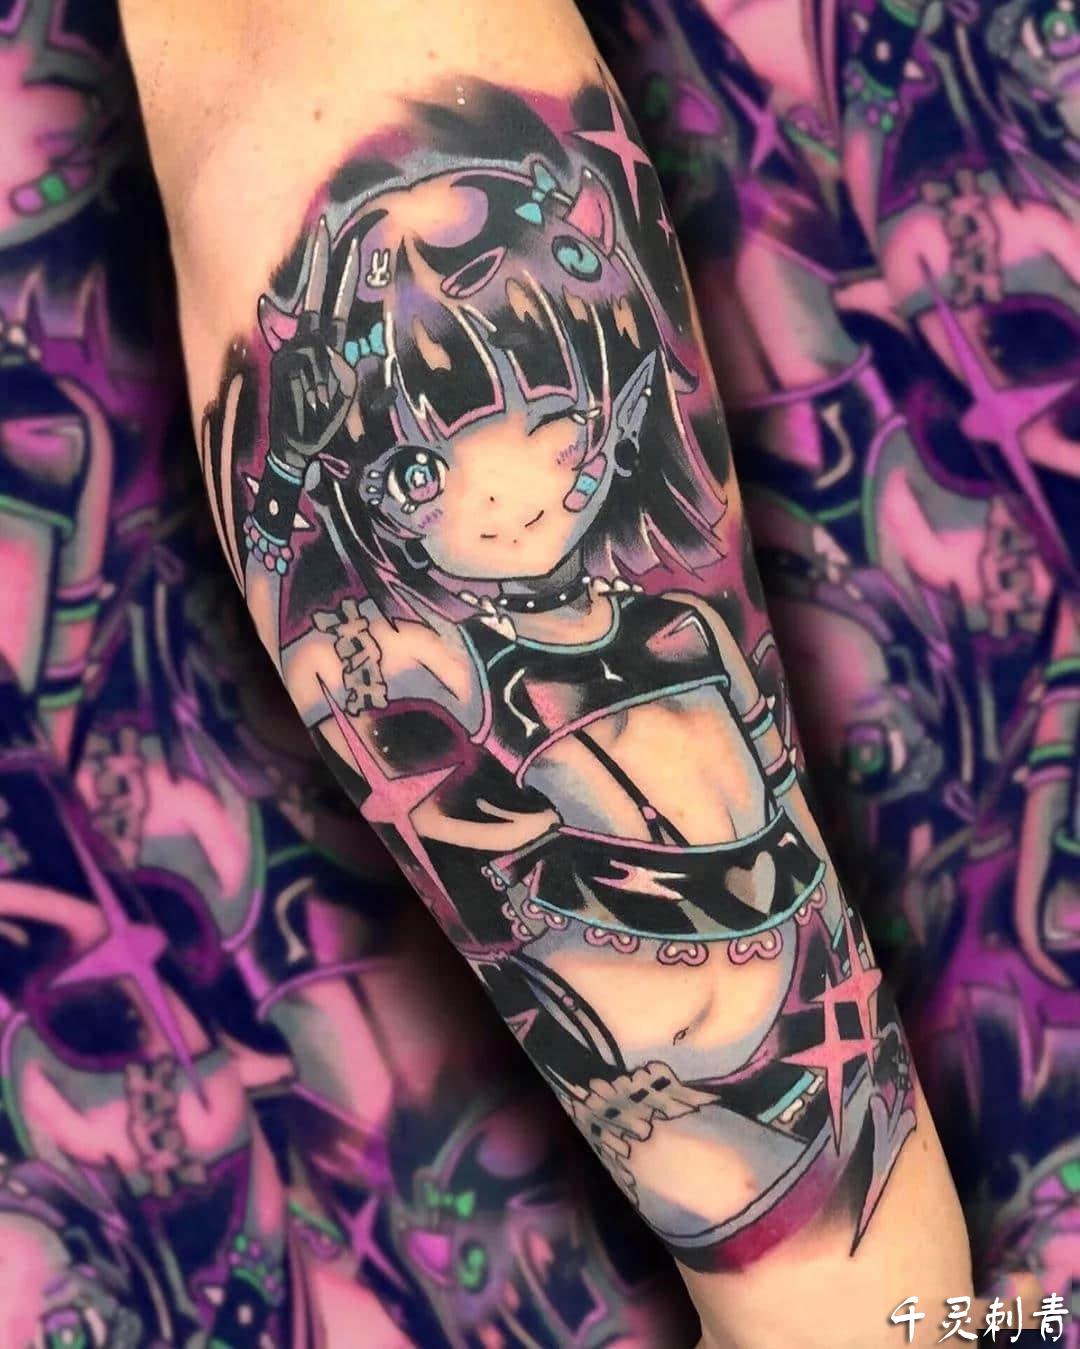 腿部动漫人物纹身手稿图案 成都千灵刺青纹身